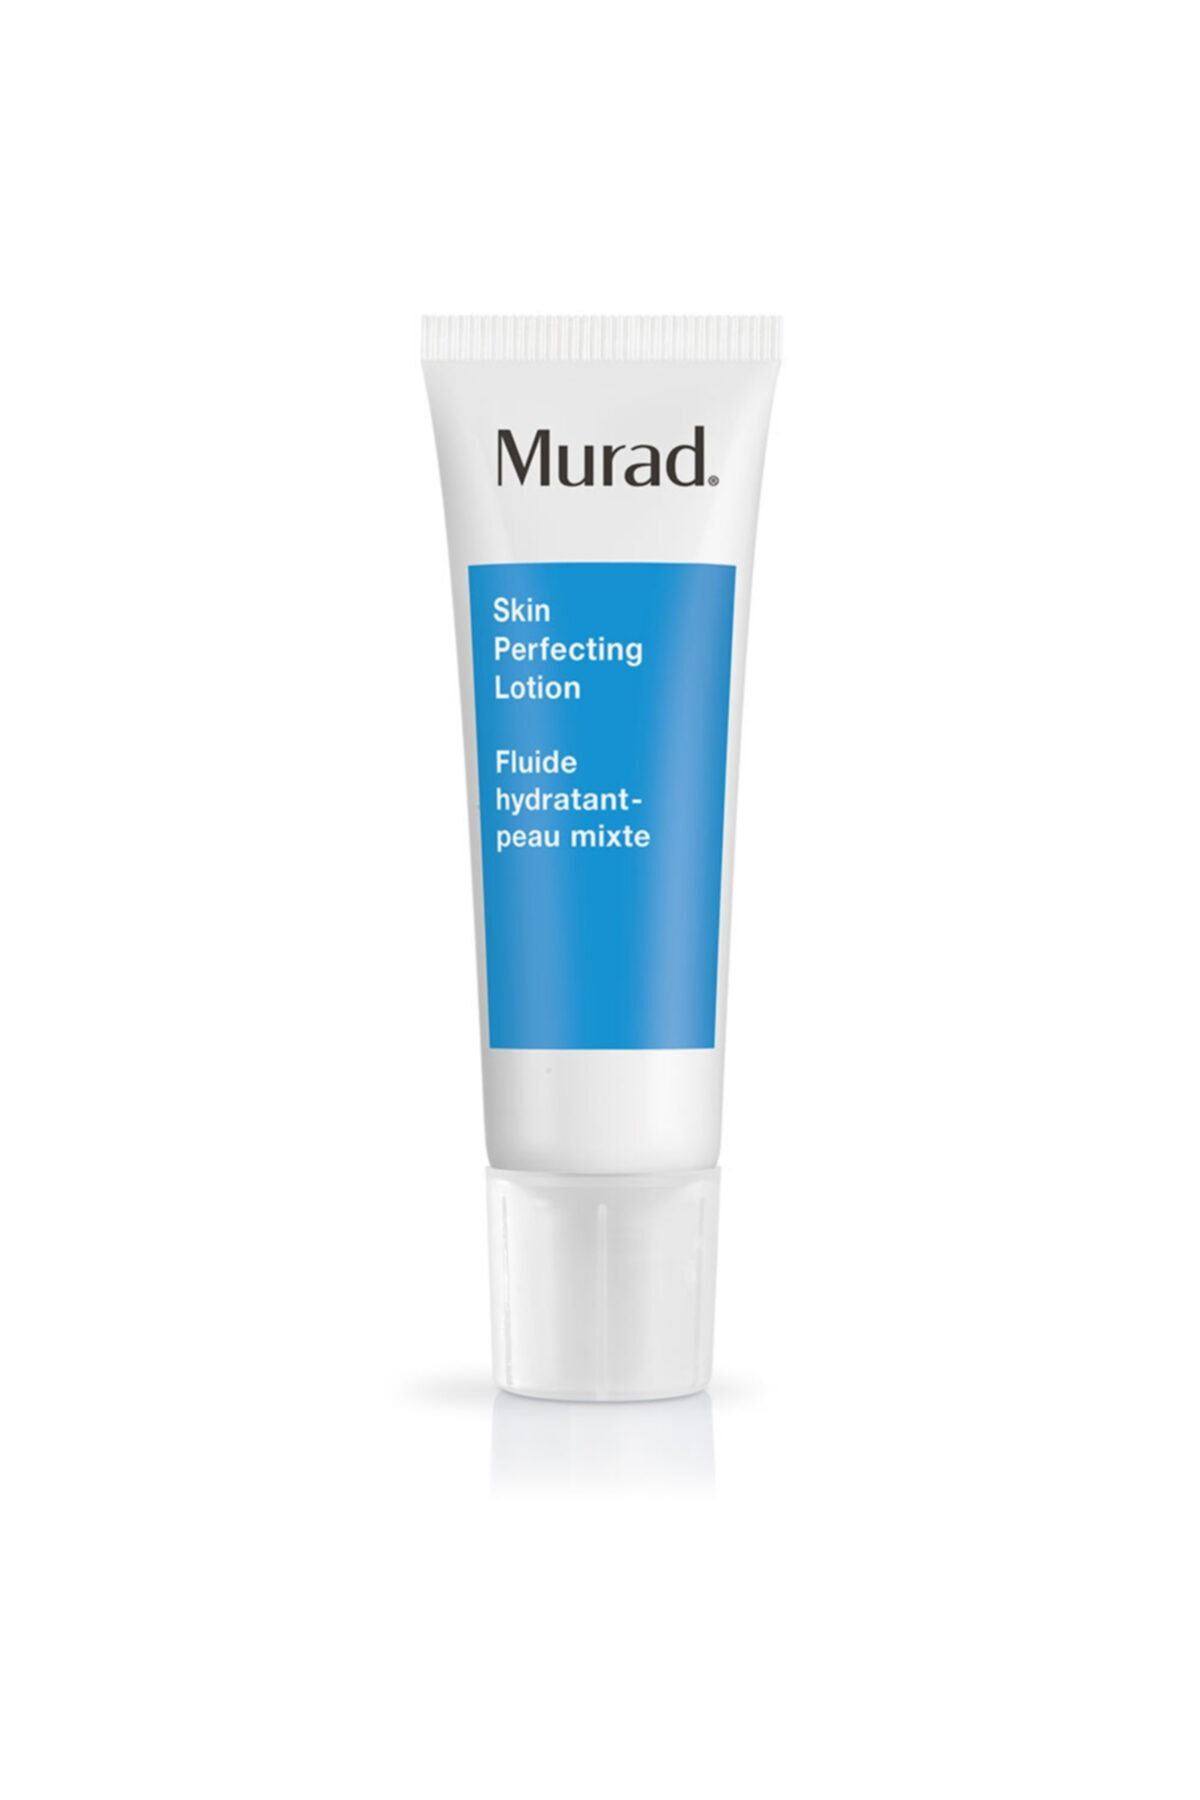 Murad Ciltteki Yağlanmayı Dengeleyici Yağsız Cilt Losyonu – Skin Perfecting Lotion 50 Ml